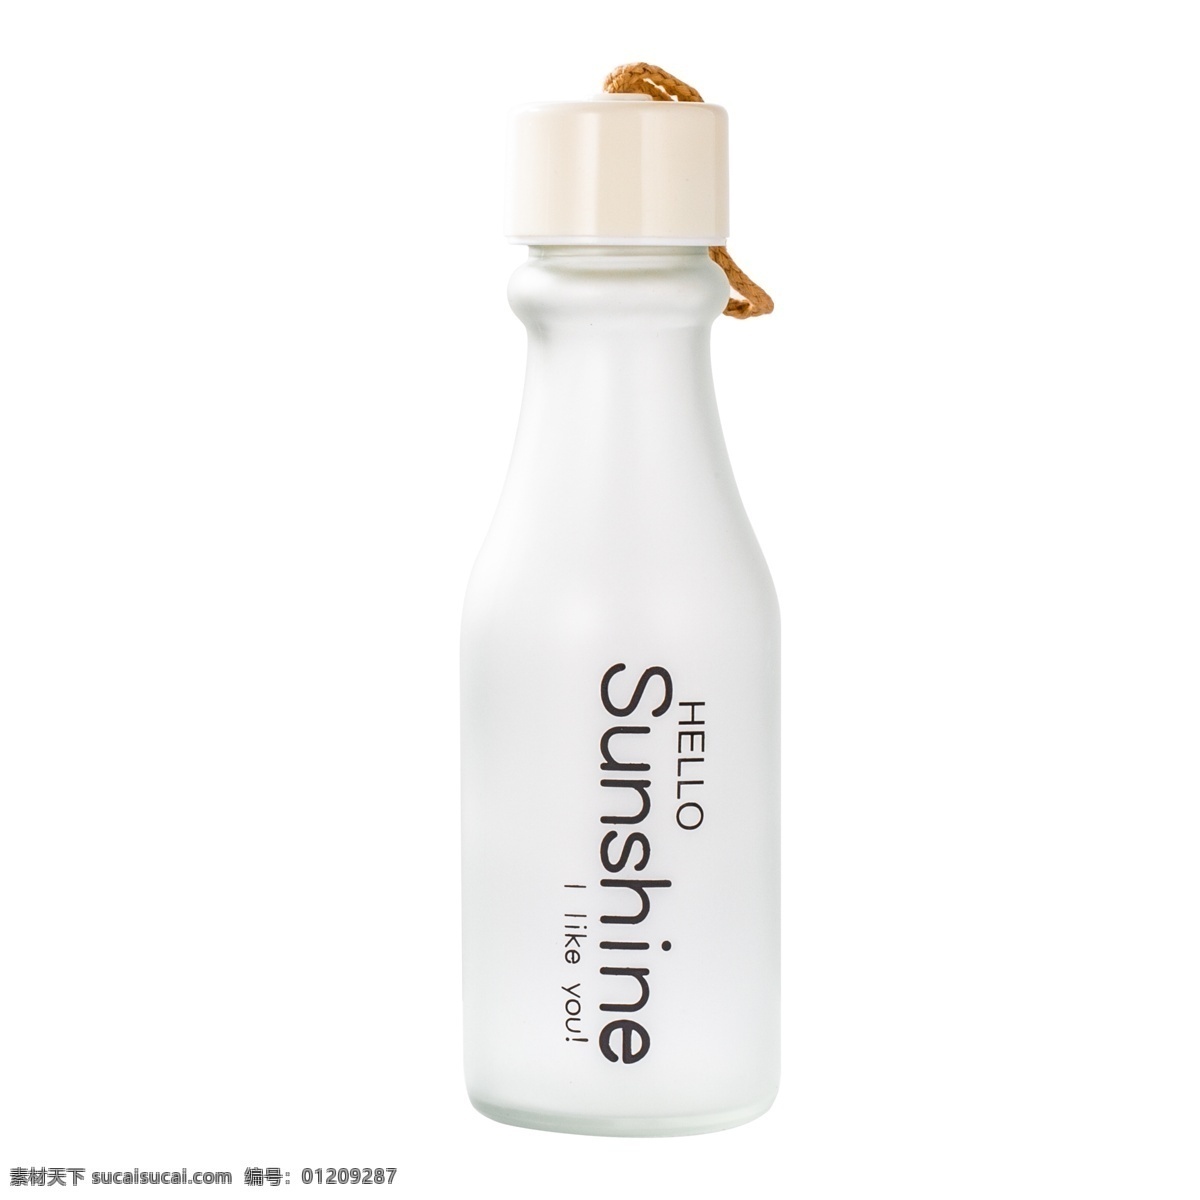 白色 立体 小 瓶子 元素 创意 小瓶子 圆润 纹理 质感 美味 味道 饮料 时尚饮料 喝的 潮流 洁白 光泽